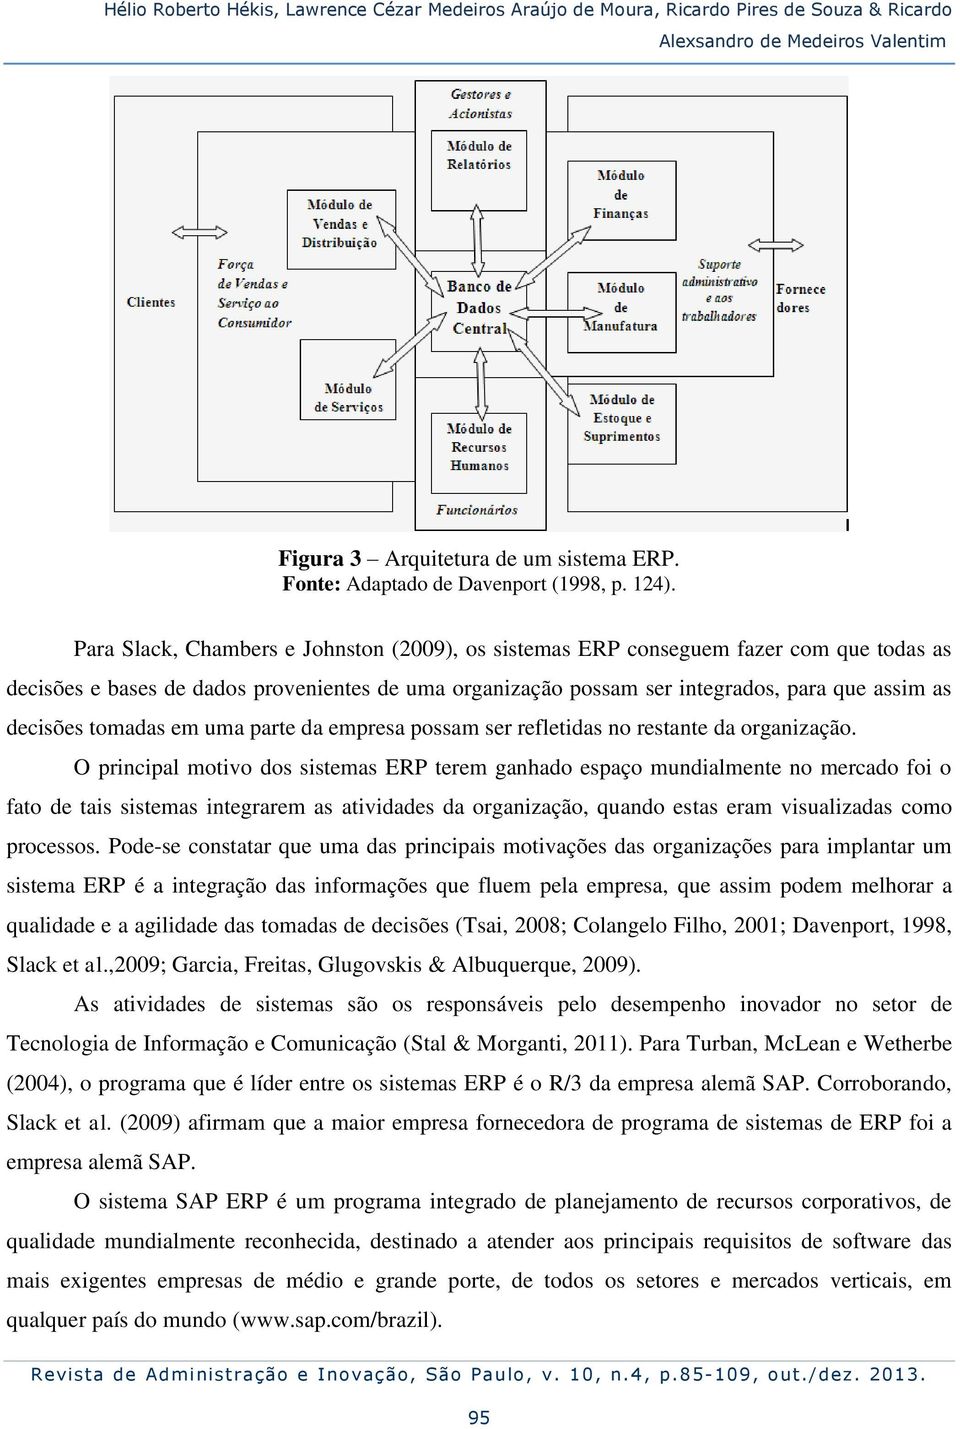 Para Slack, Chambers e Johnston (2009), os sistemas ERP conseguem fazer com que todas as decisões e bases de dados provenientes de uma organização possam ser integrados, para que assim as decisões